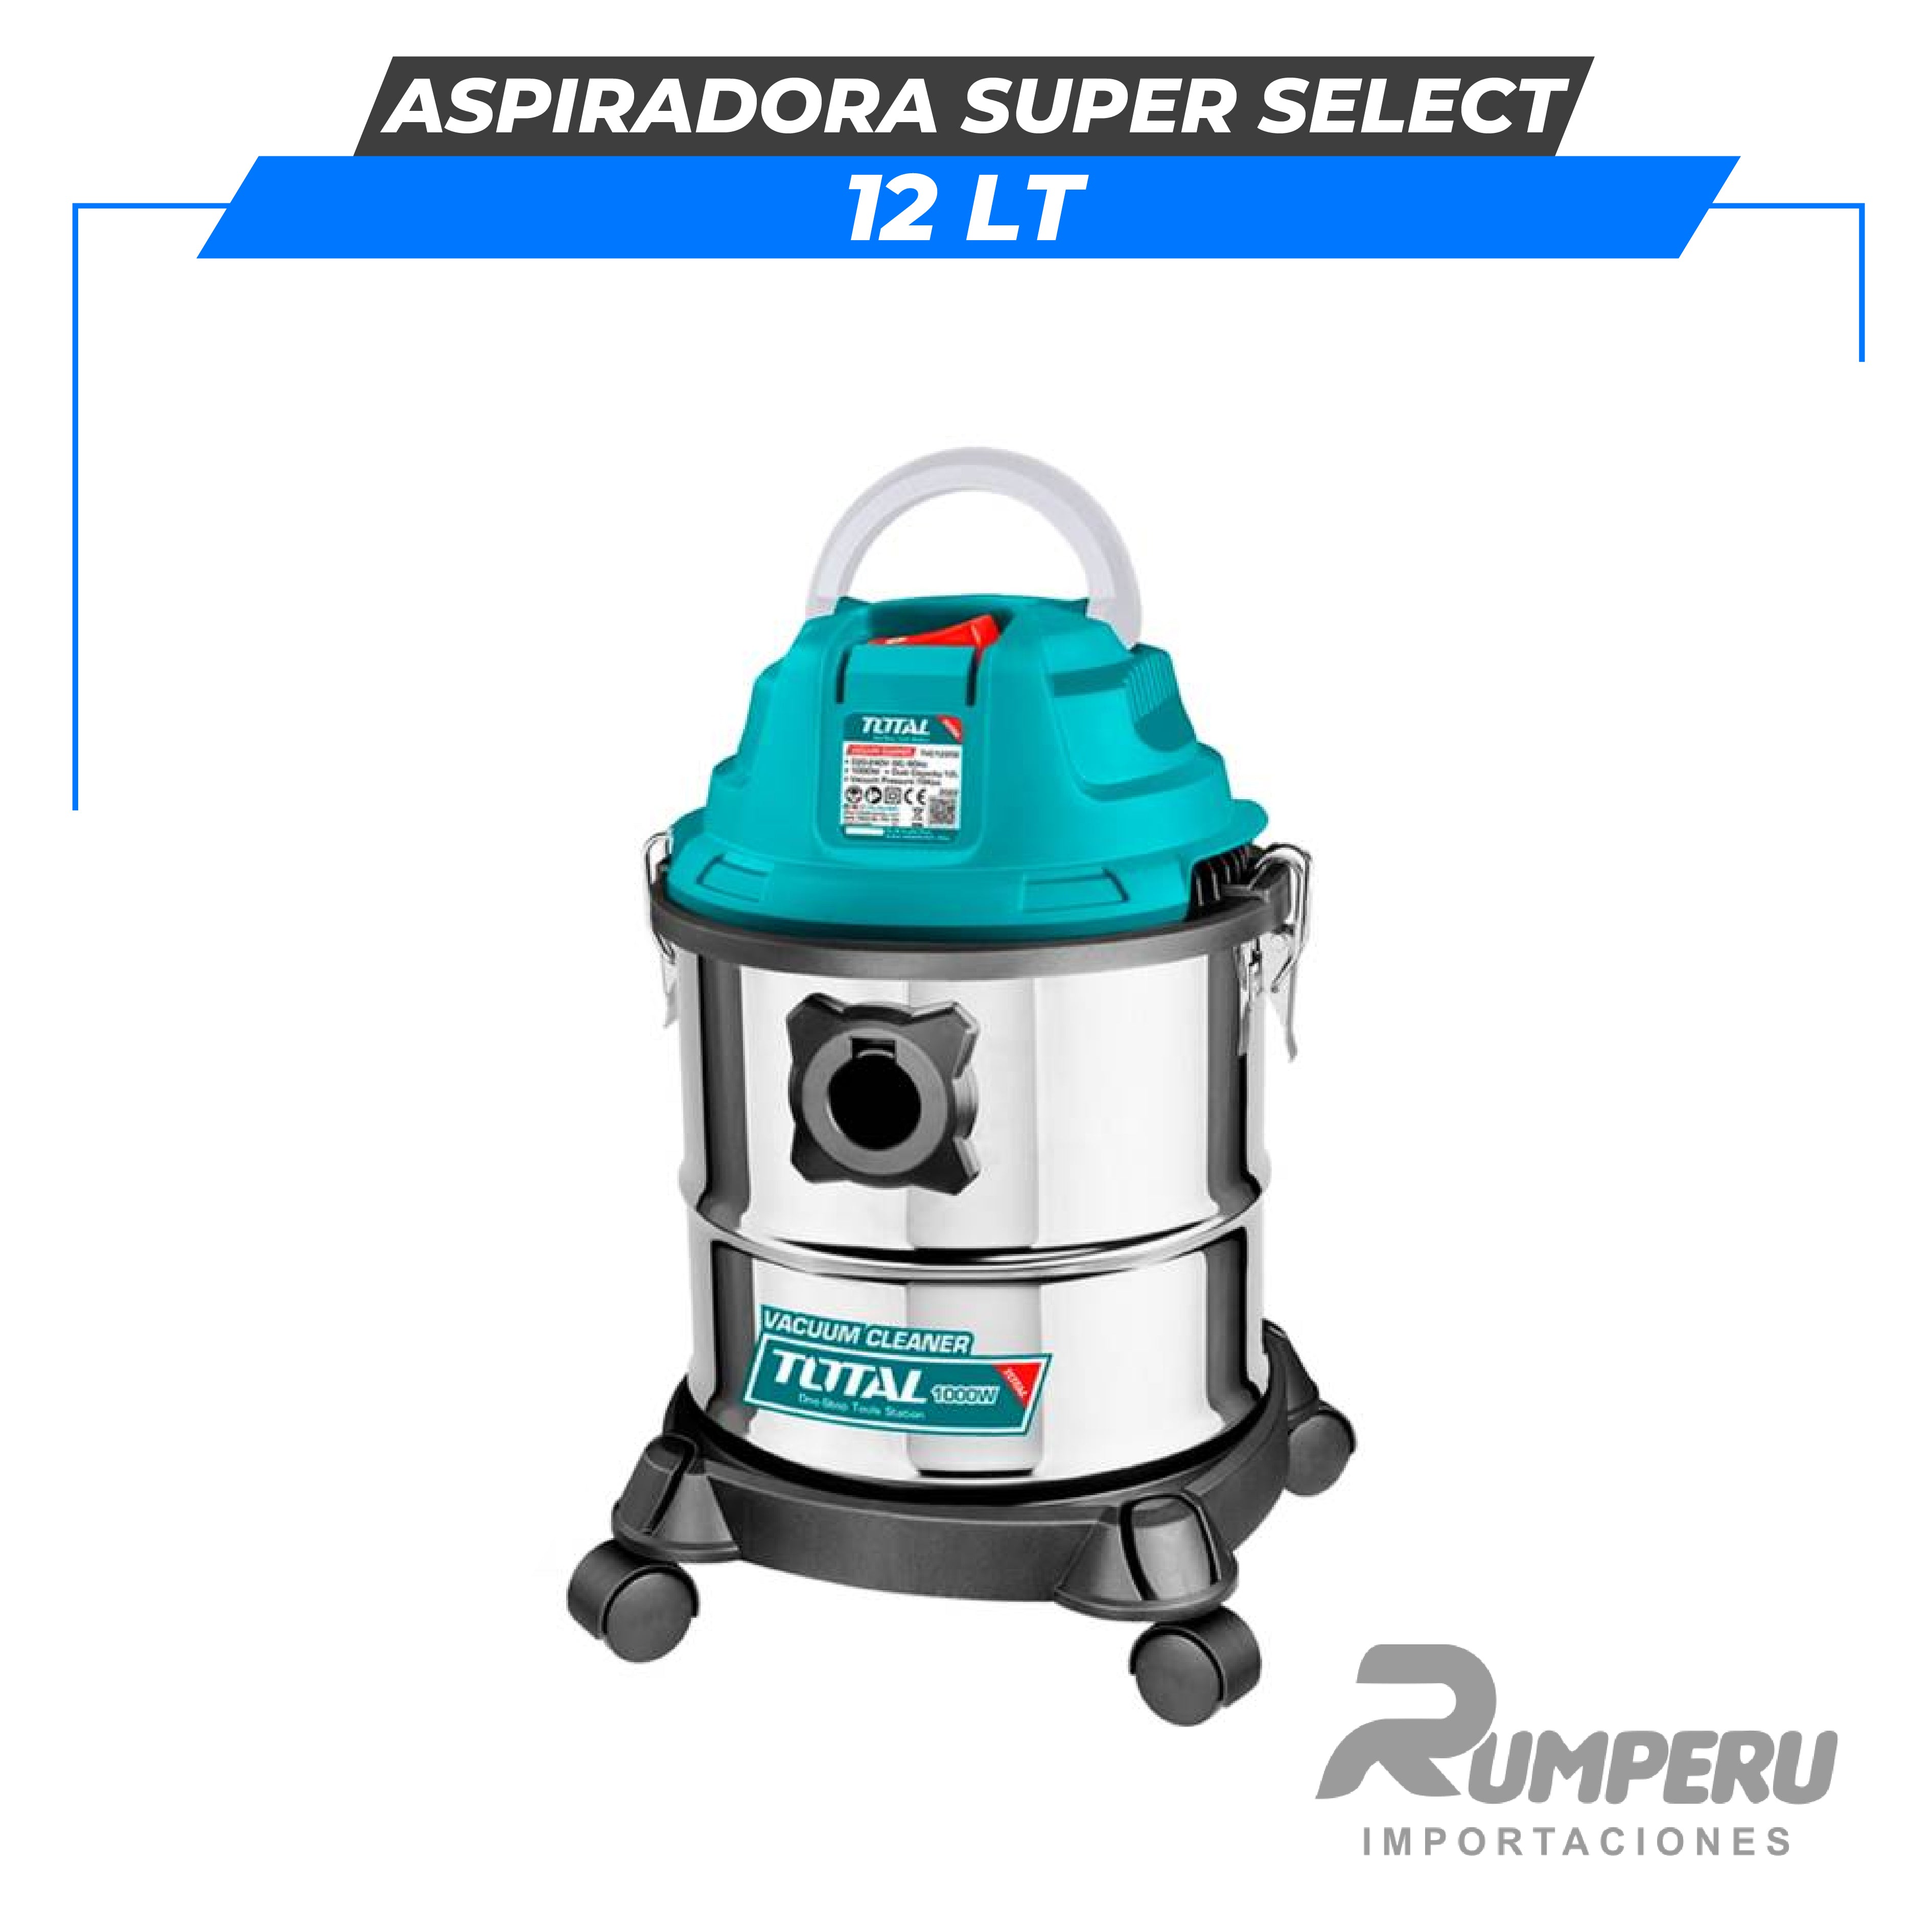 Aspiradora 12L SUPER SELECT